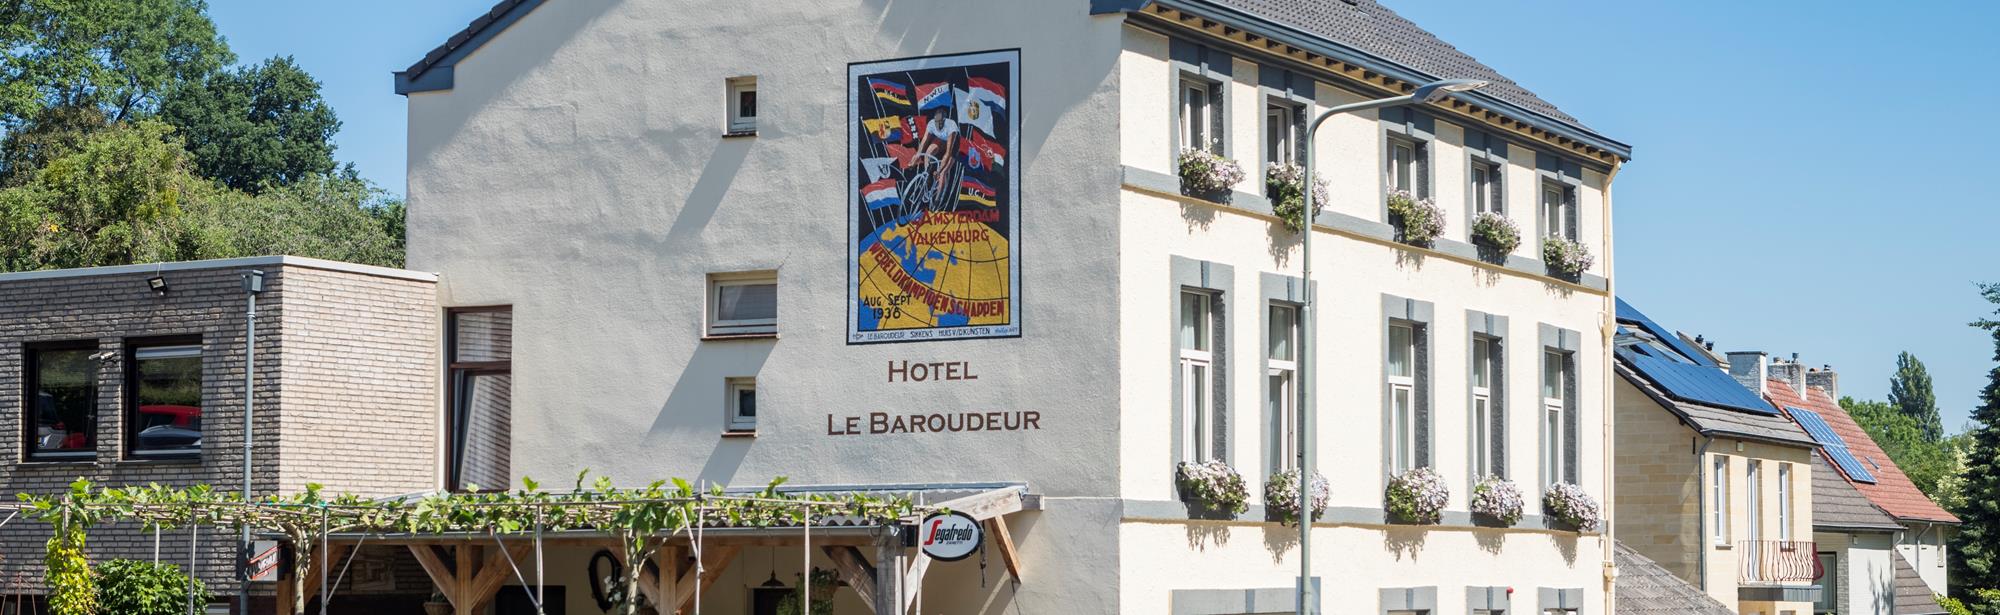 Hotel Le Baroudeur